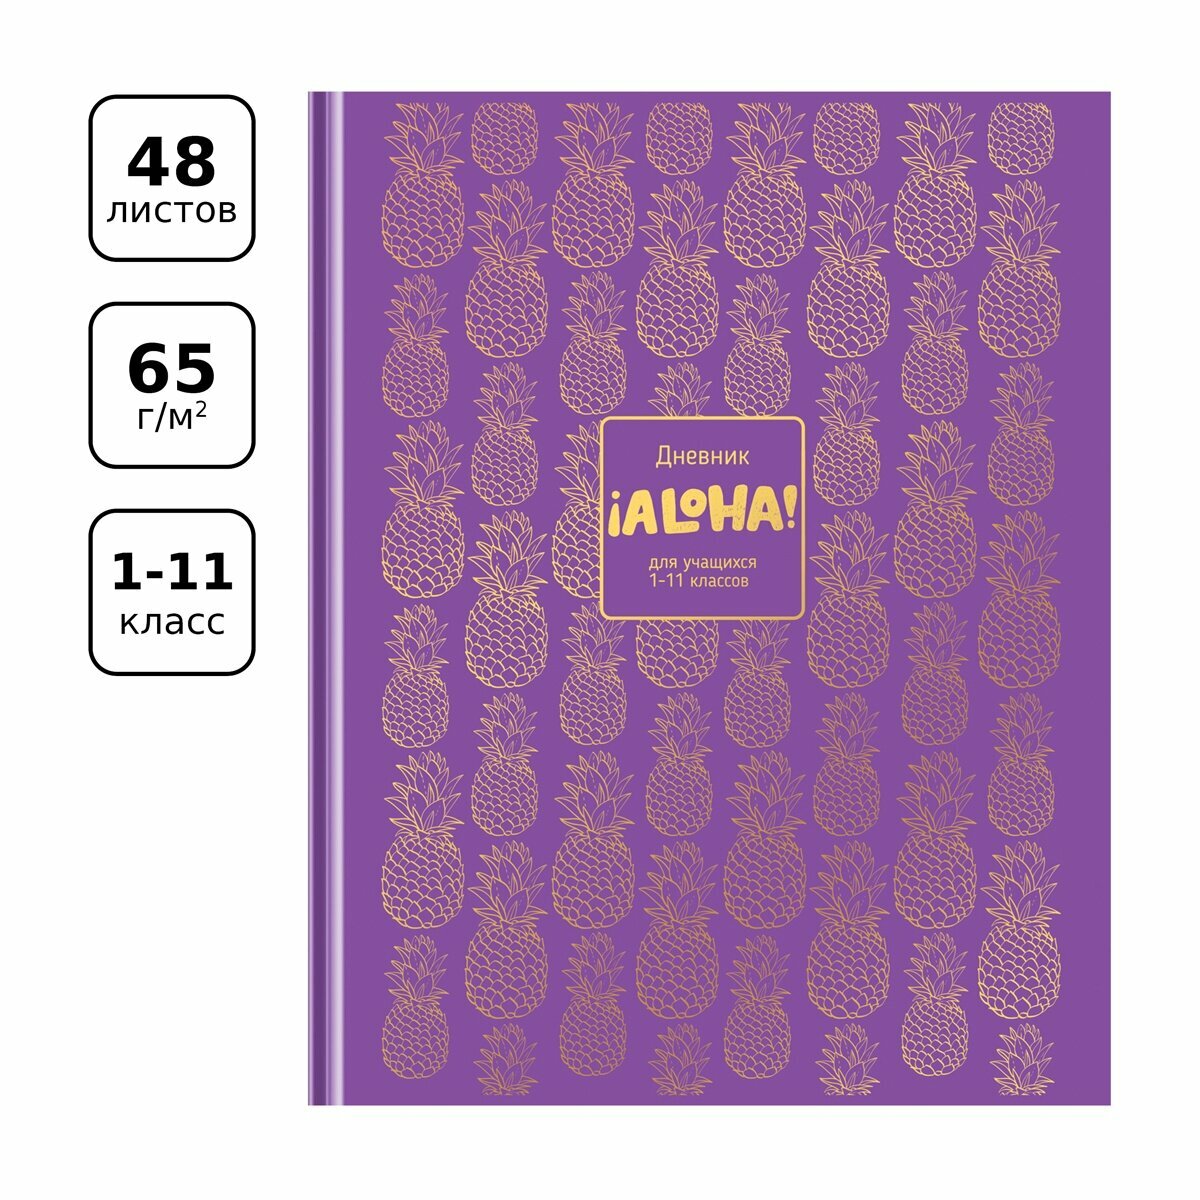 Дневник BG "Aloha", 1-11 класс, 48 листов, твердый, глянцевая ламинация, тиснение фольгой (Д5т48_лг_тф 11509)